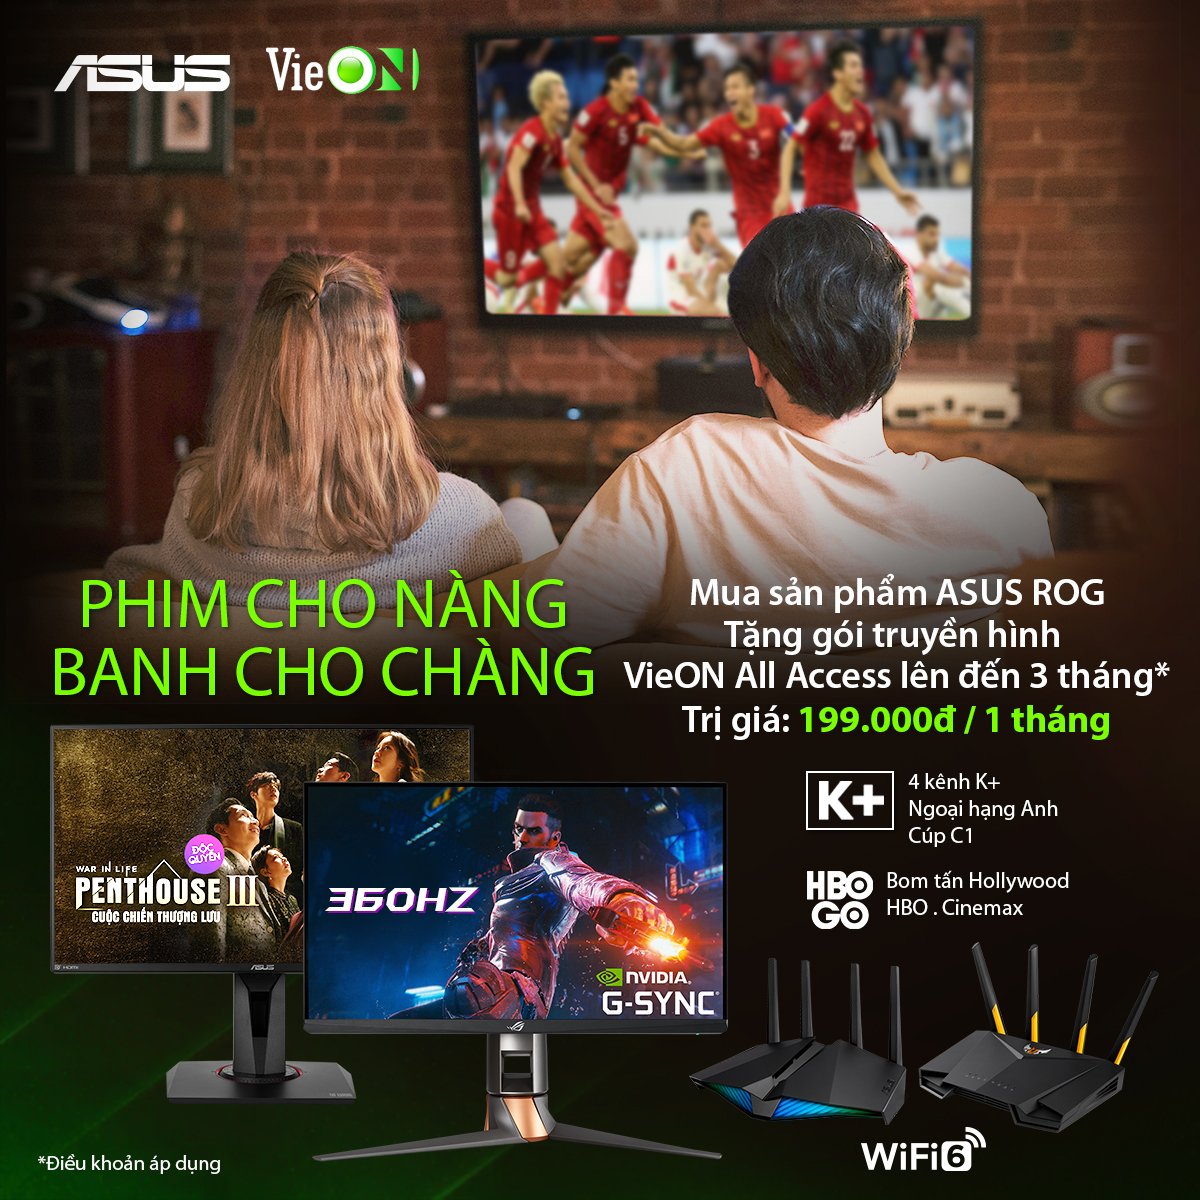 ASUS - VieOn promotion - PHIM CHO NÀNG BANH CHO CHÀNG